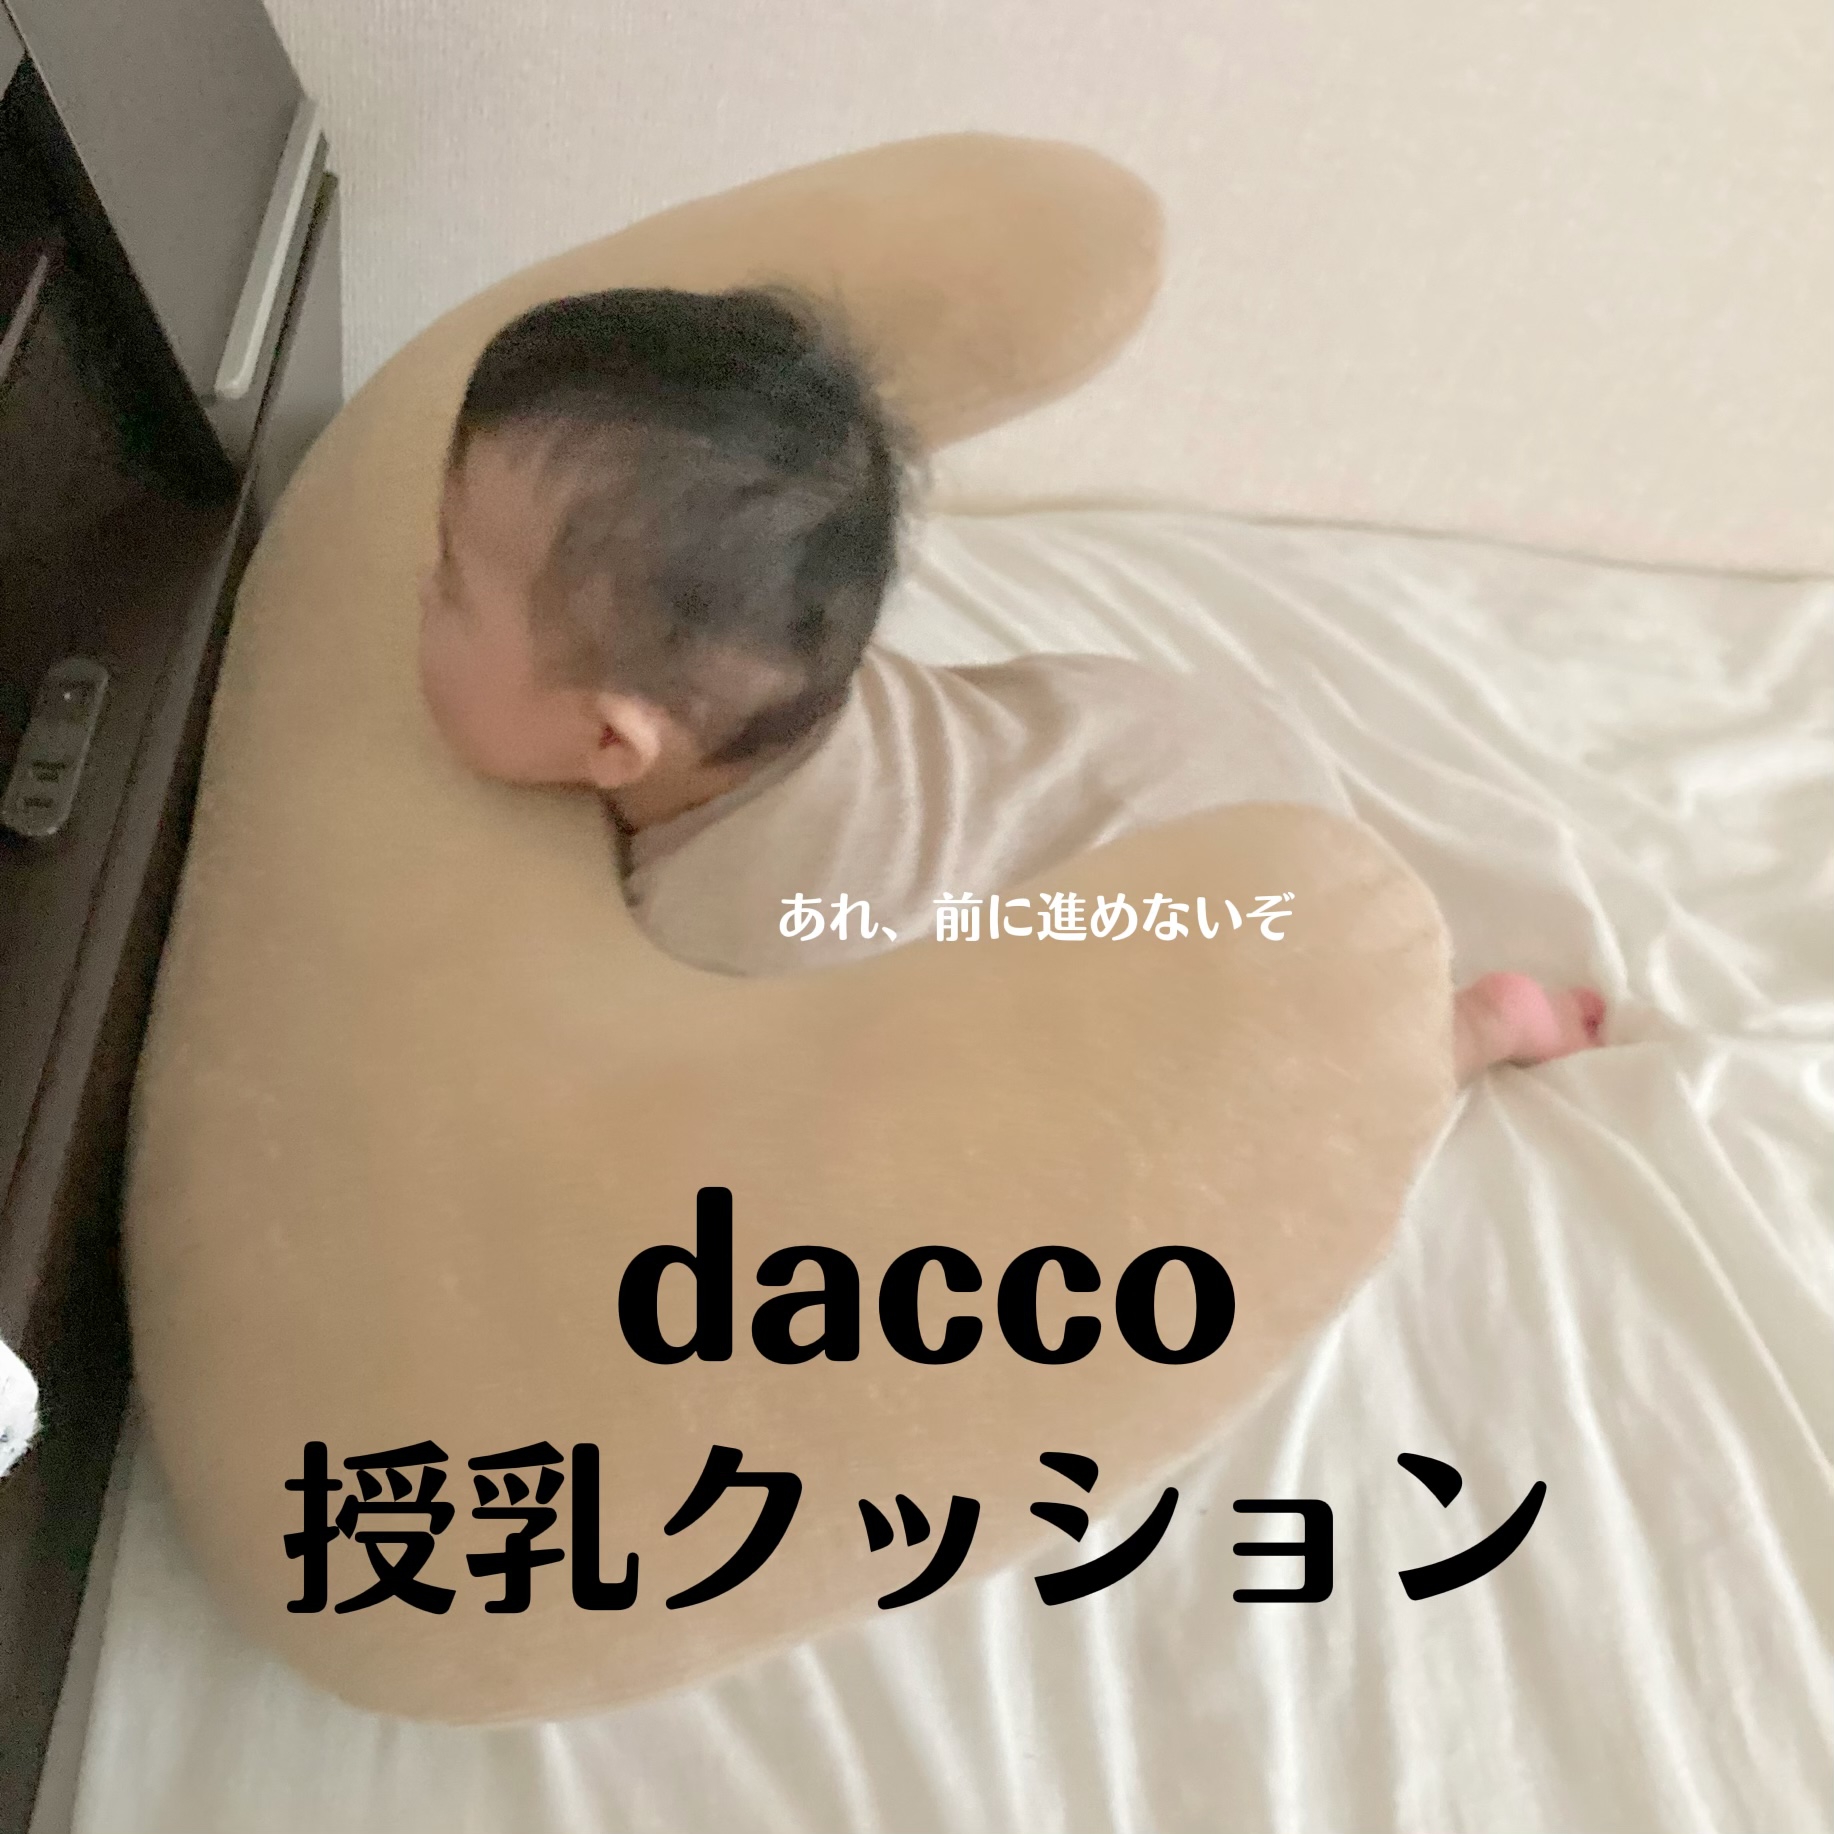 使いやすい授乳クッション』by こら : dacco(ダッコ) 授乳用クッションの口コミ | モノシル